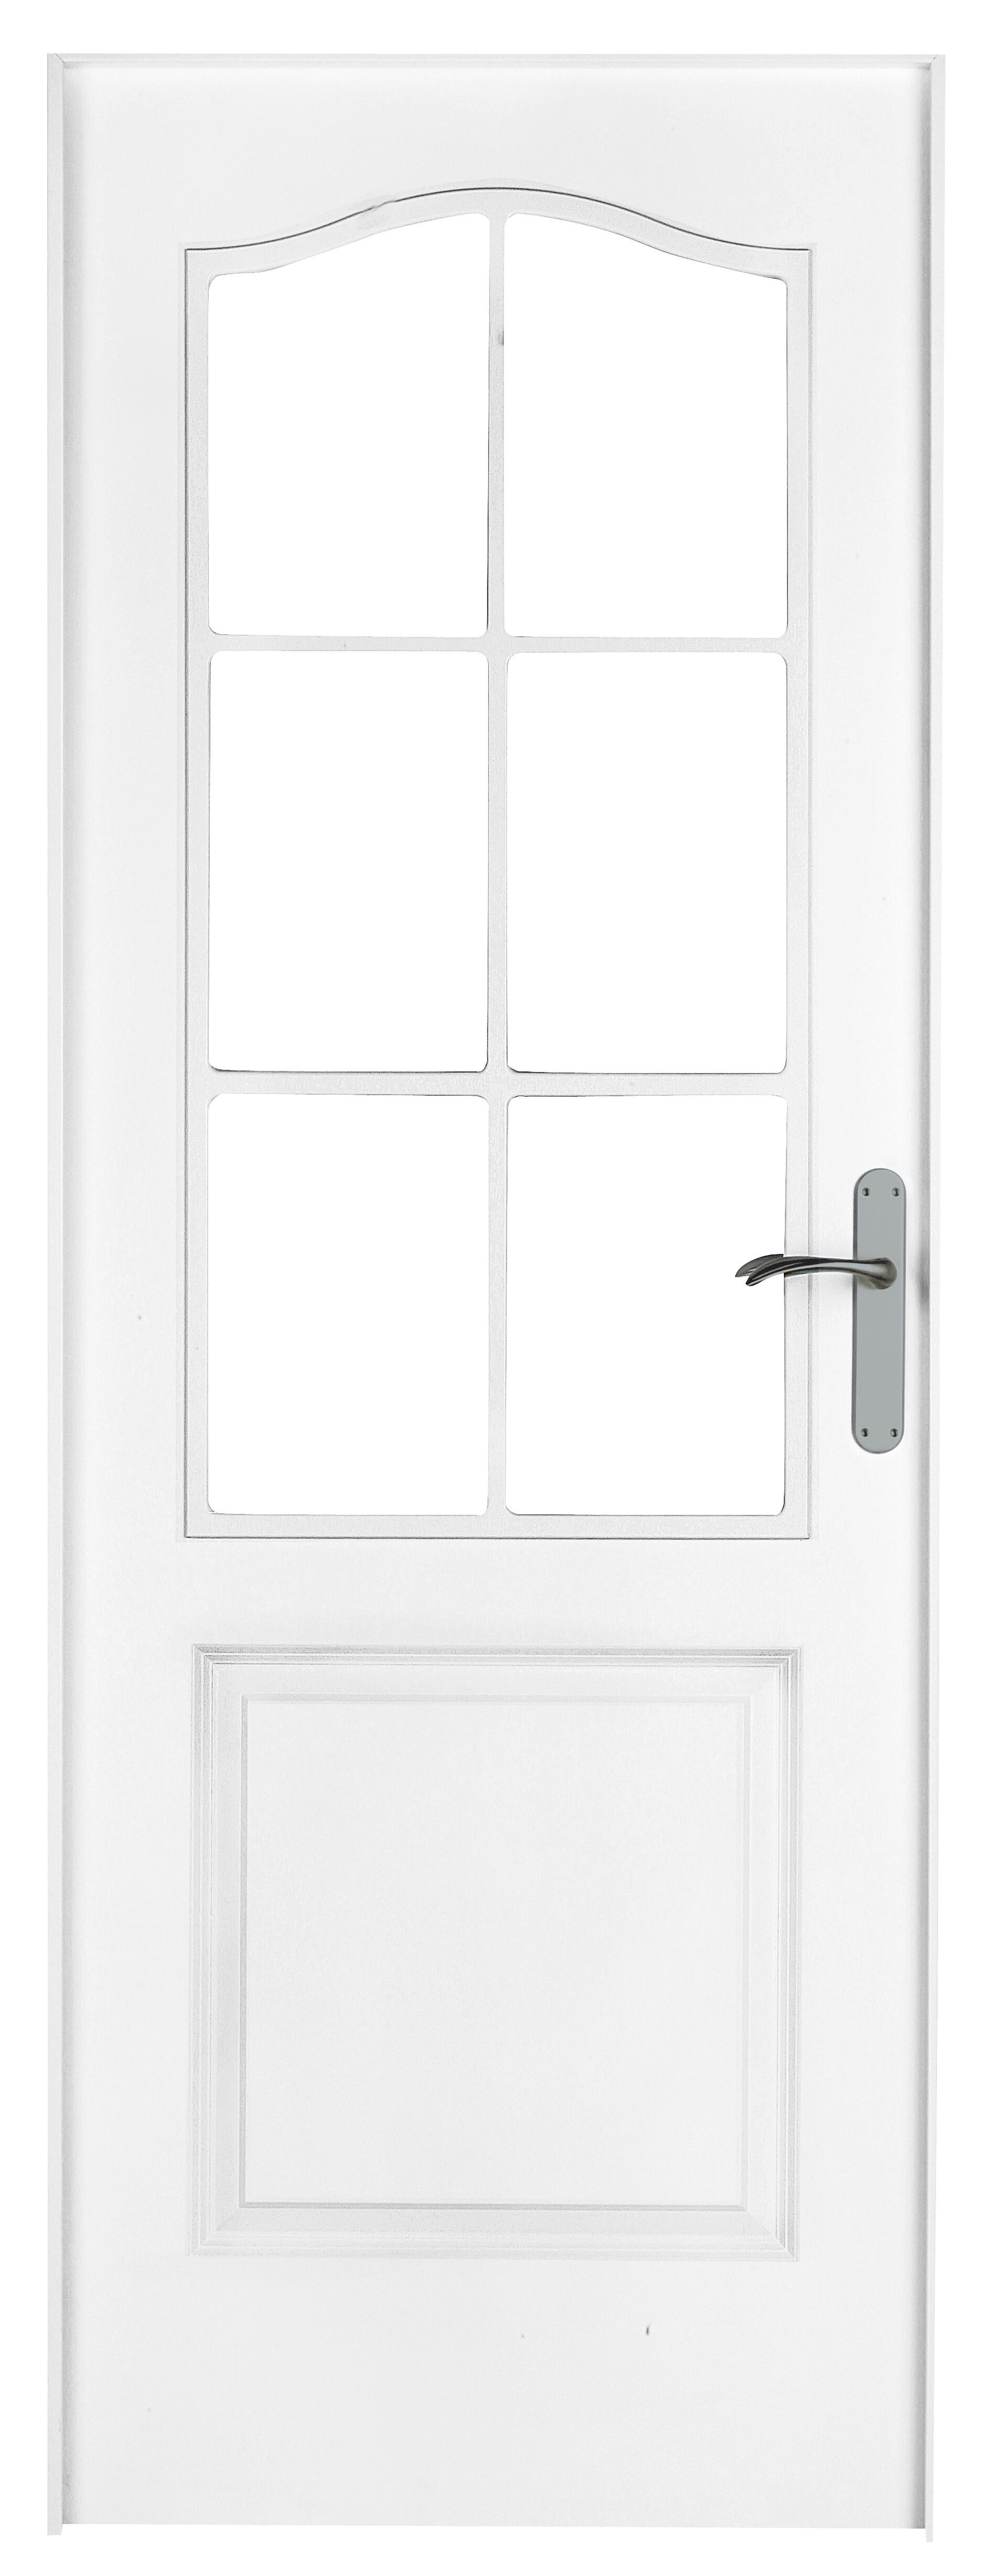 Puerta abatible bonn blanca aero blanco izquierda con cristal de 90x30 y 72.5cm